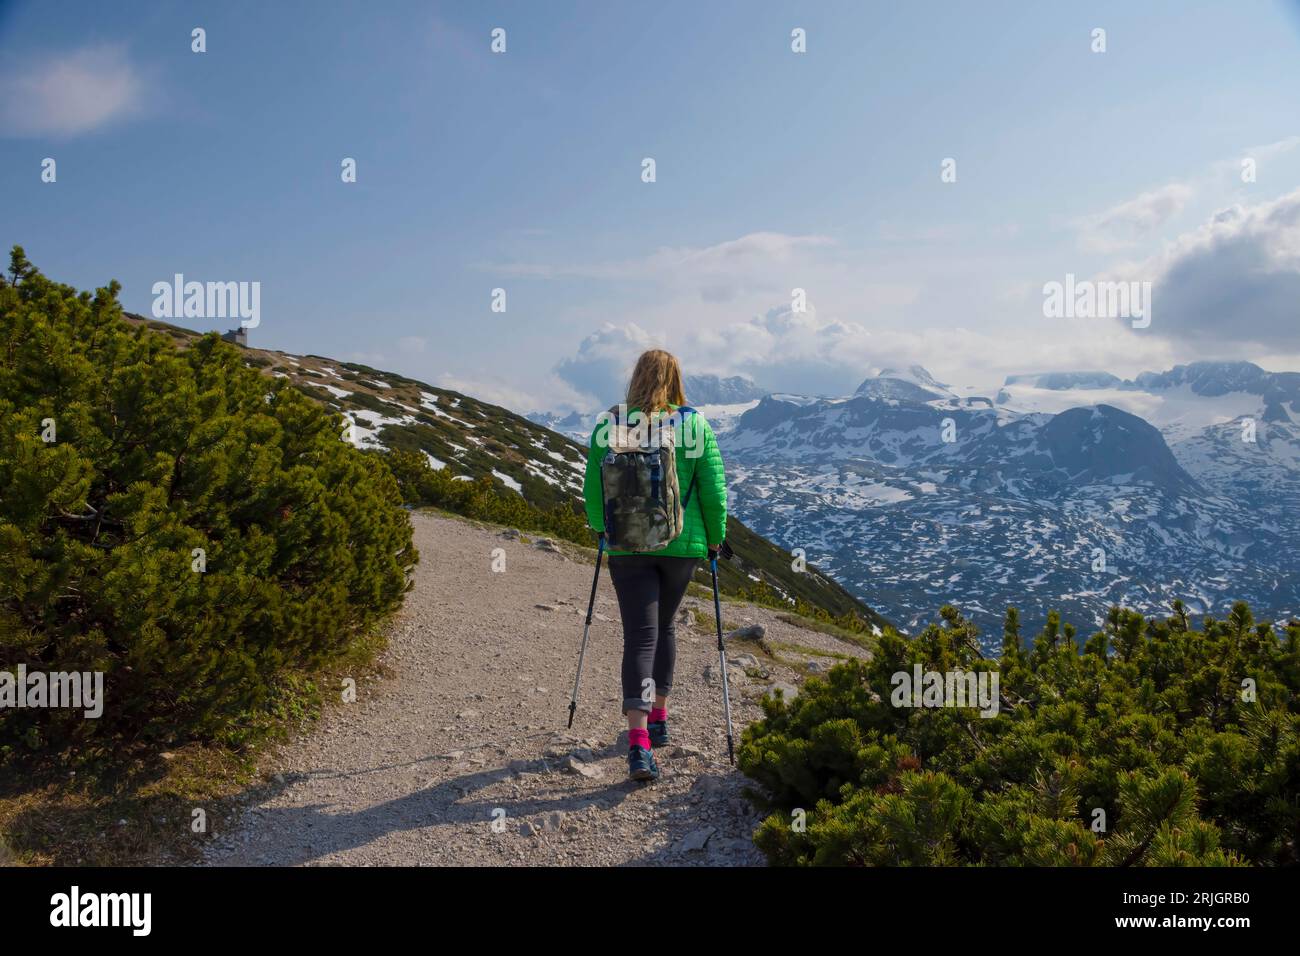 Tourist woman trekking on Mount Krippenstein in the Dachstein Mountains of Upper Austria, Salzkammergut region, Austria. Stock Photo